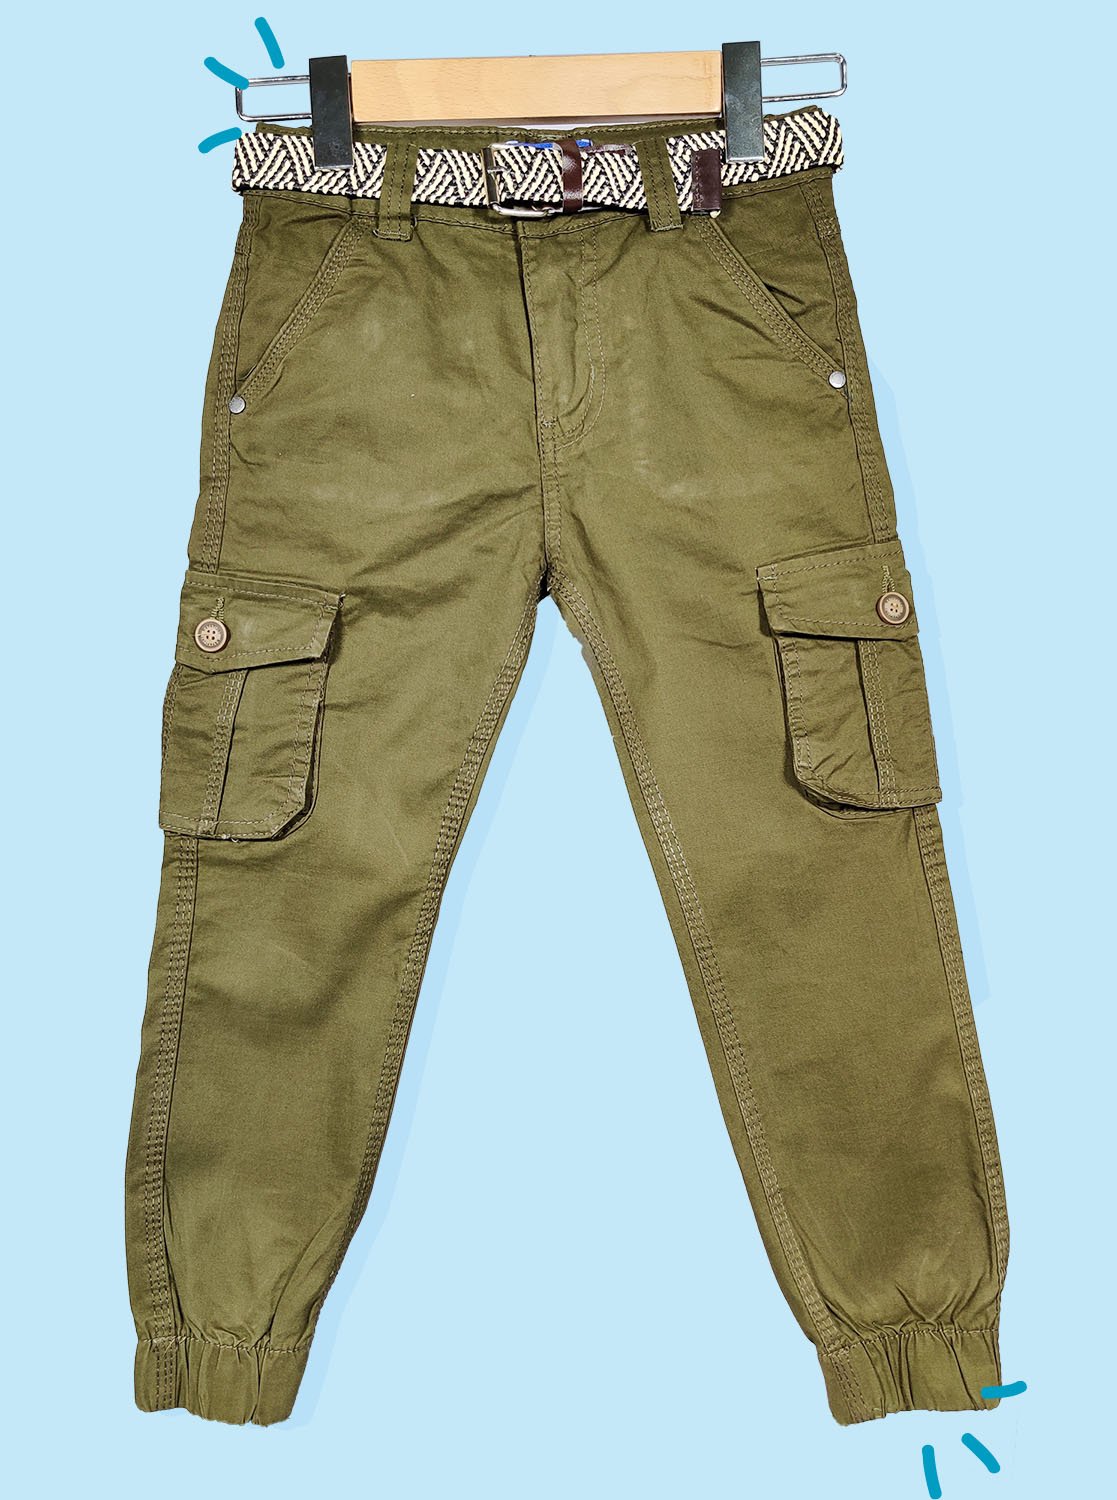 Six Pocket Pants for Boys -Boys Stylish Cargo Pants/Boys Jogger Jeans